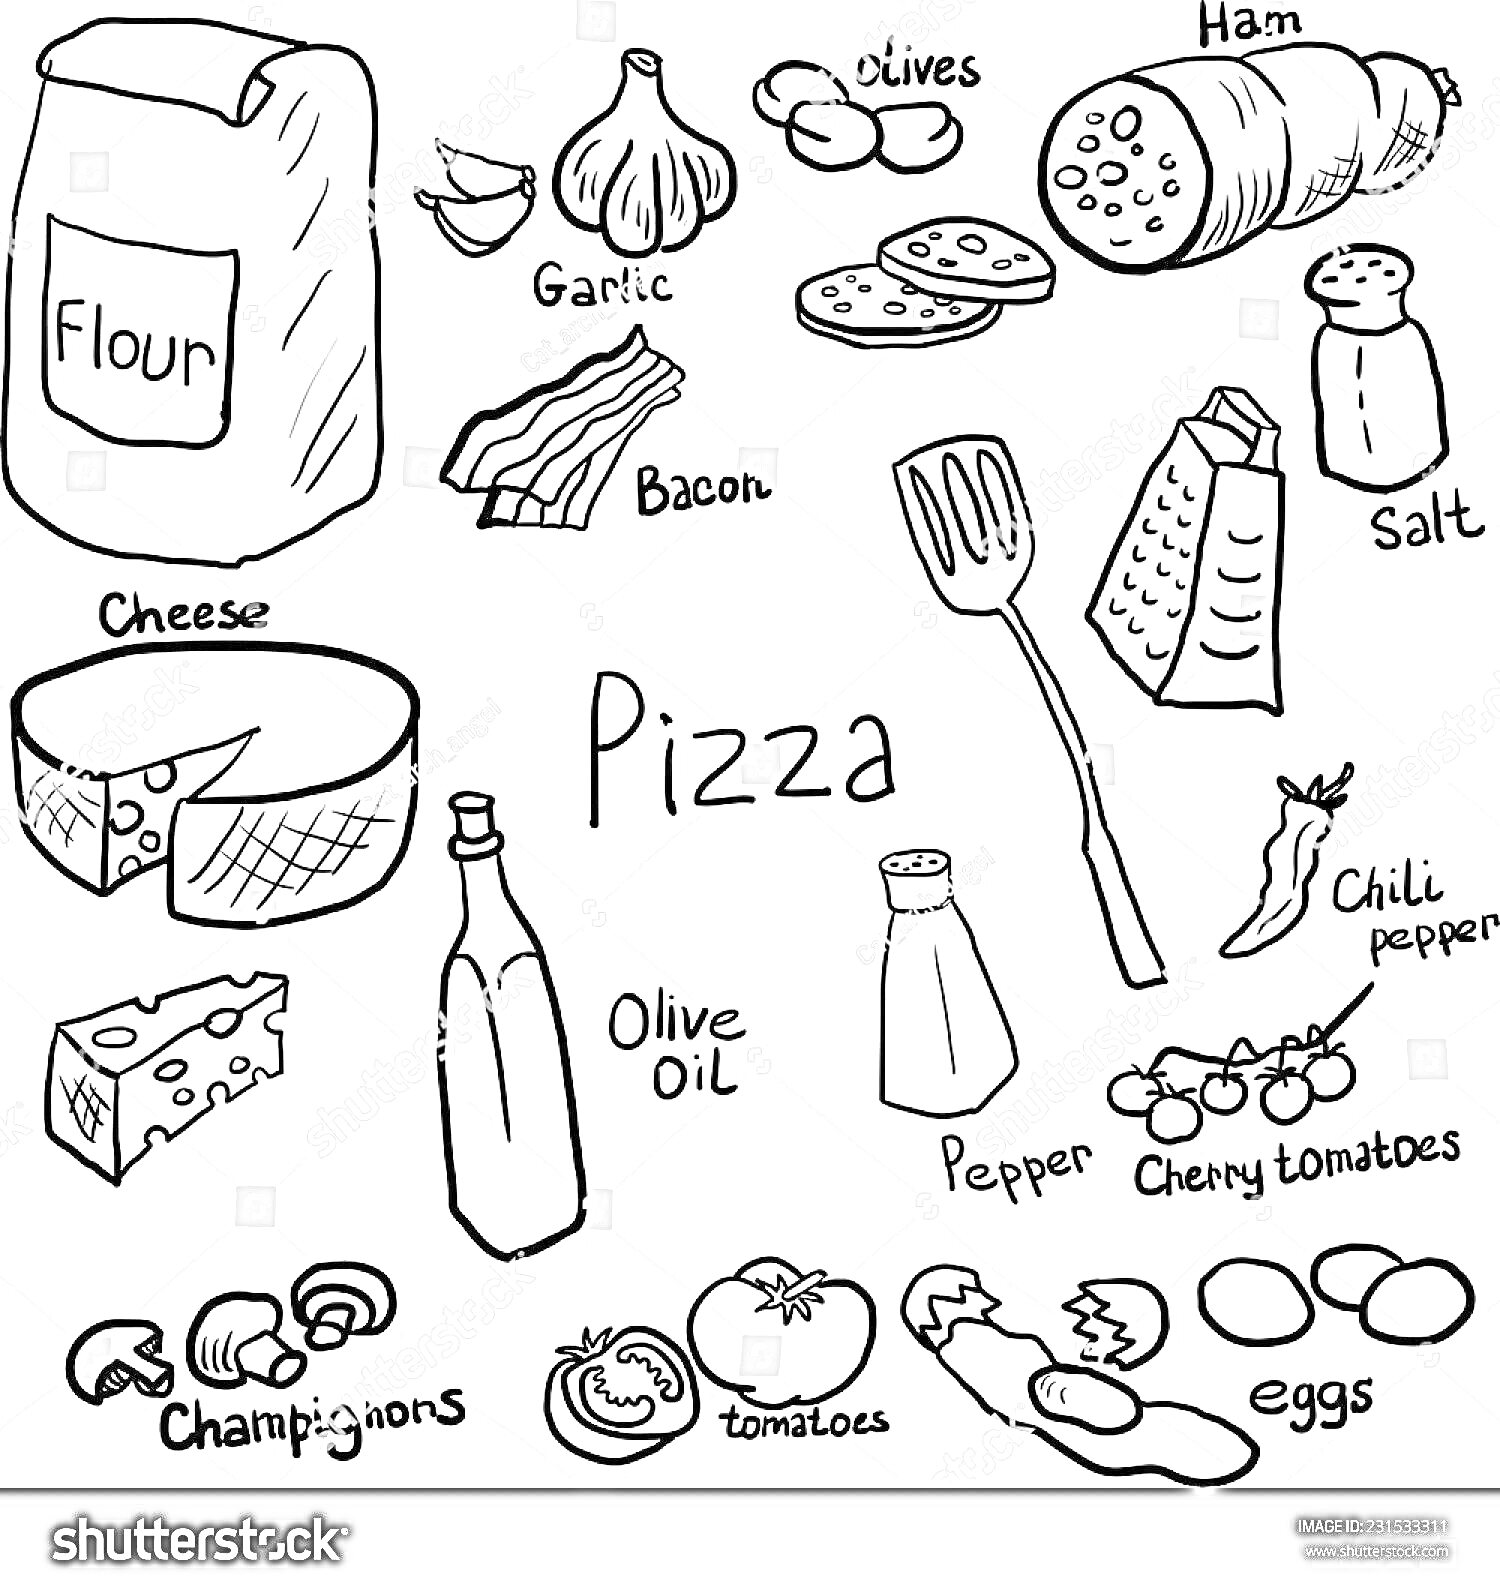 Раскраска Ингредиенты для пиццы - мука, чеснок, оливки, ветчина, соль, сыр, масло оливковое, помидоры черри, яйца, грибы, помидоры, масло, перец чили, перец черный, бекон, терка